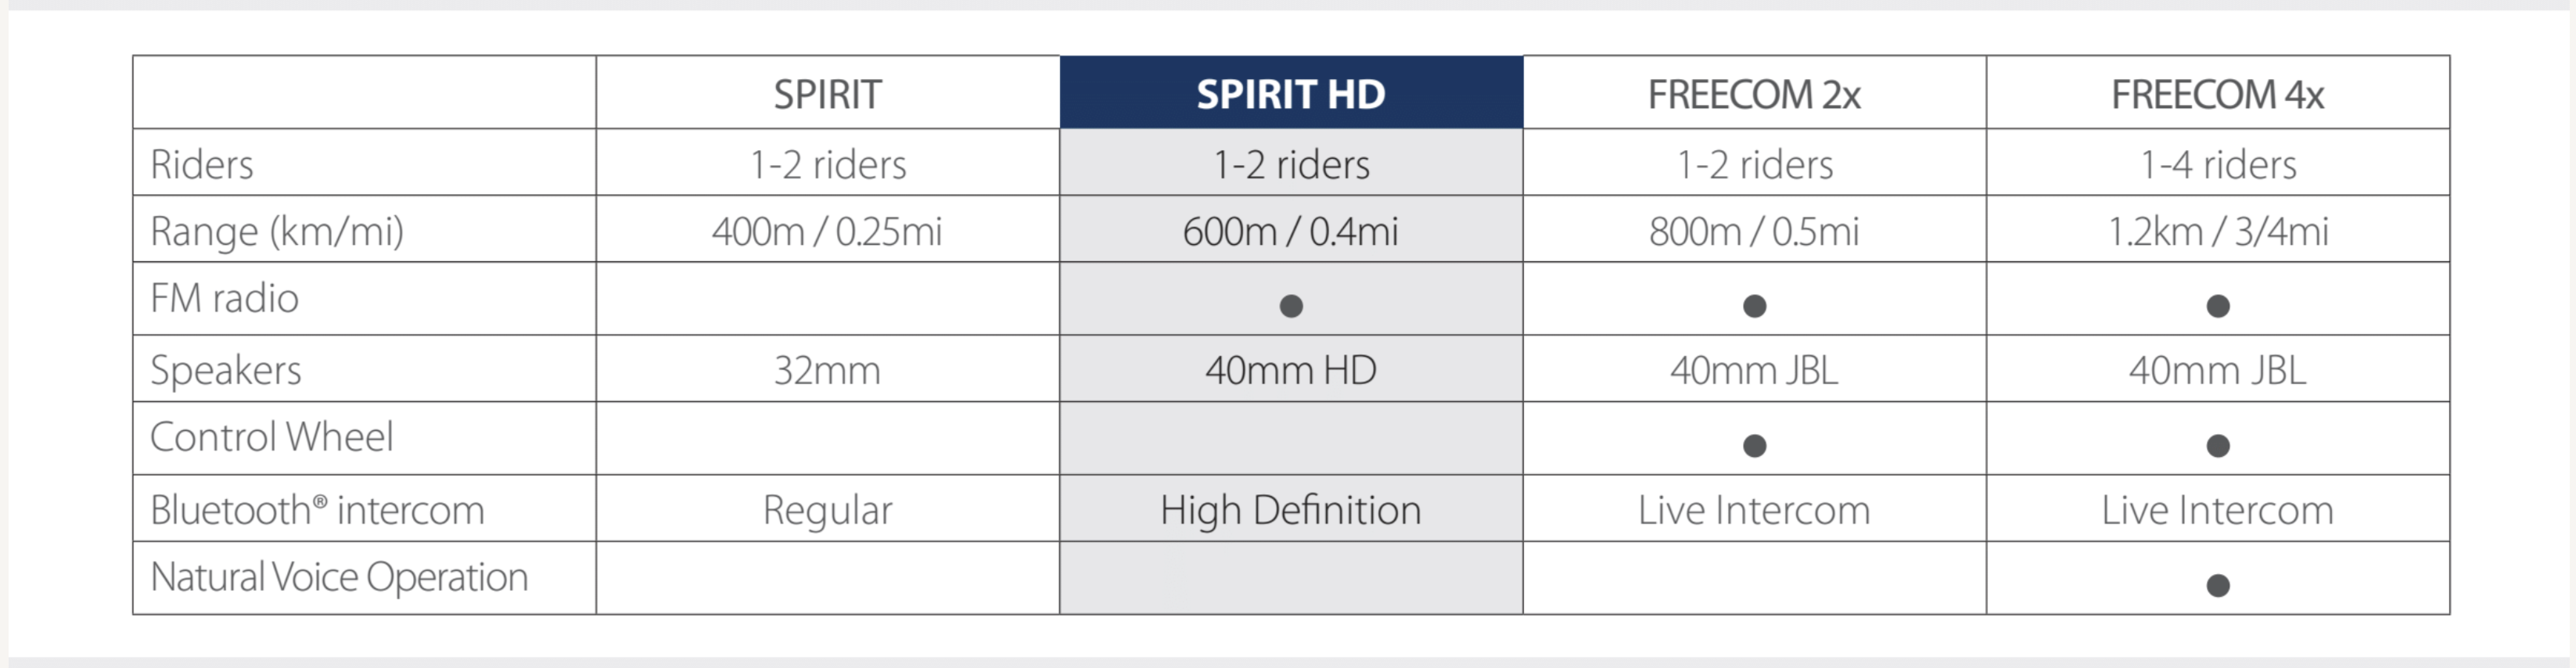 Comparativa Cardo Spirit y Freecom 2x 4x